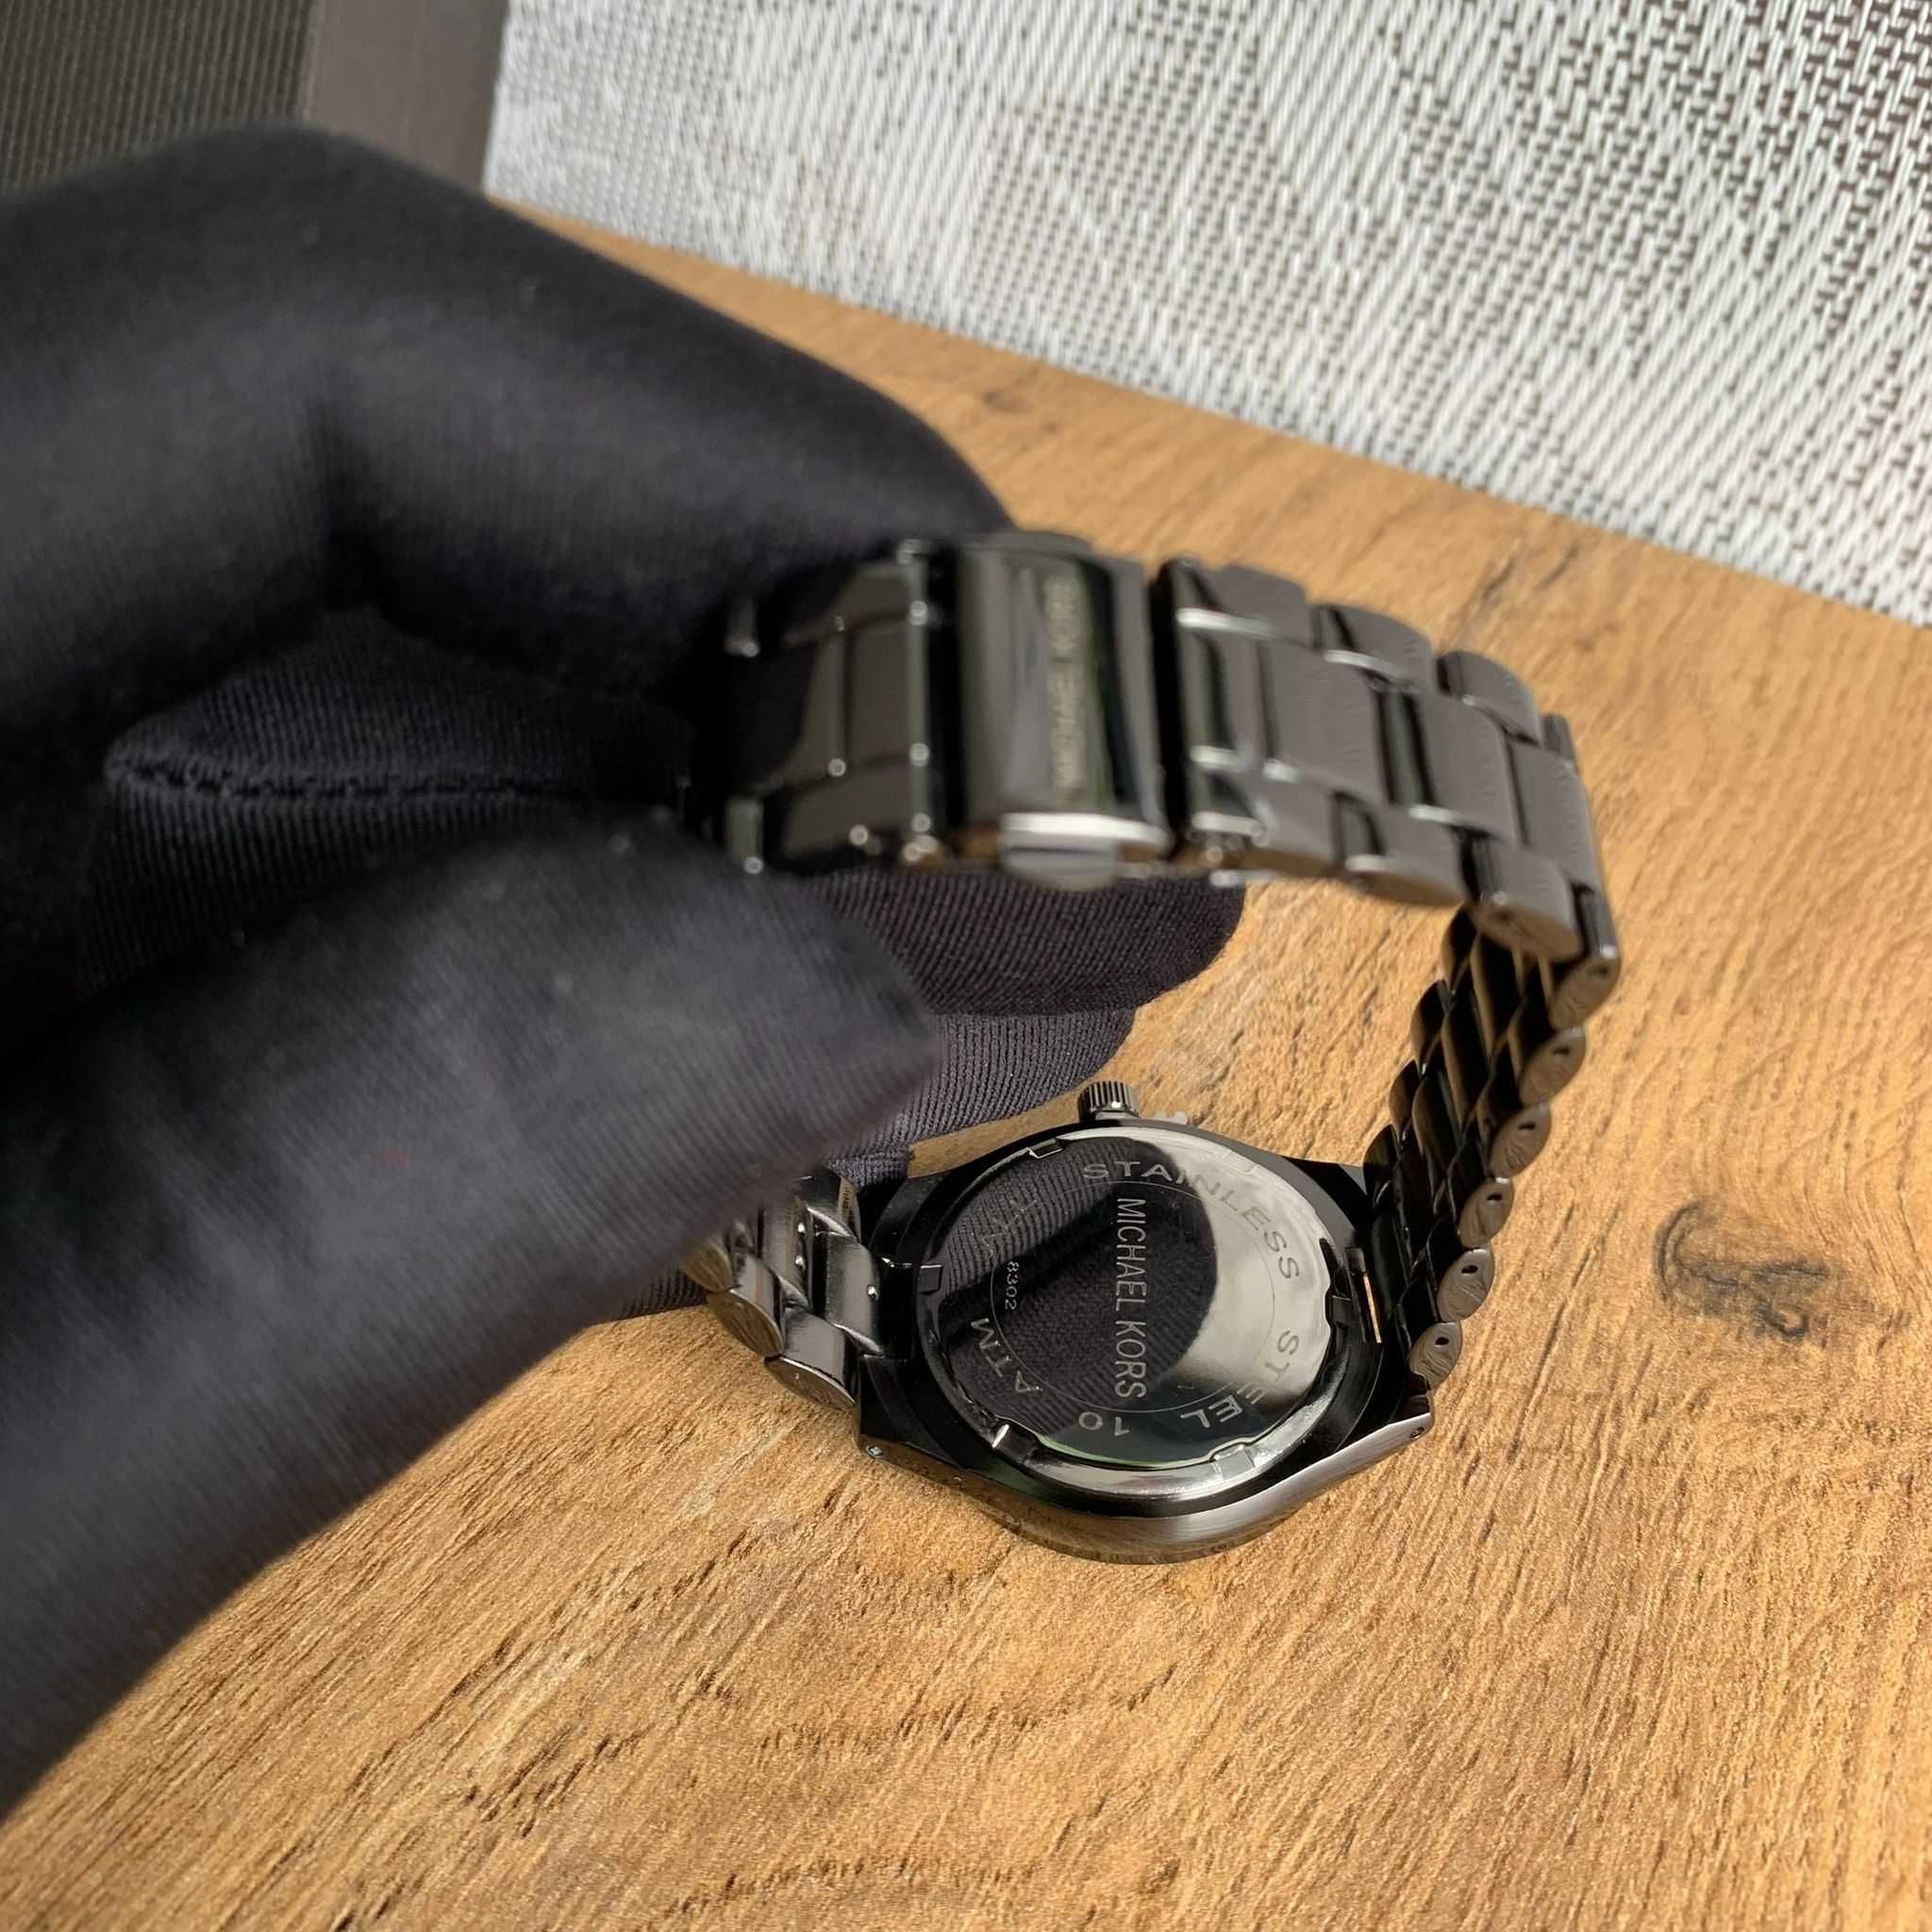 Damski Zegarek Michael Kors - Analogowy Klasyczny Kolekcjonerski